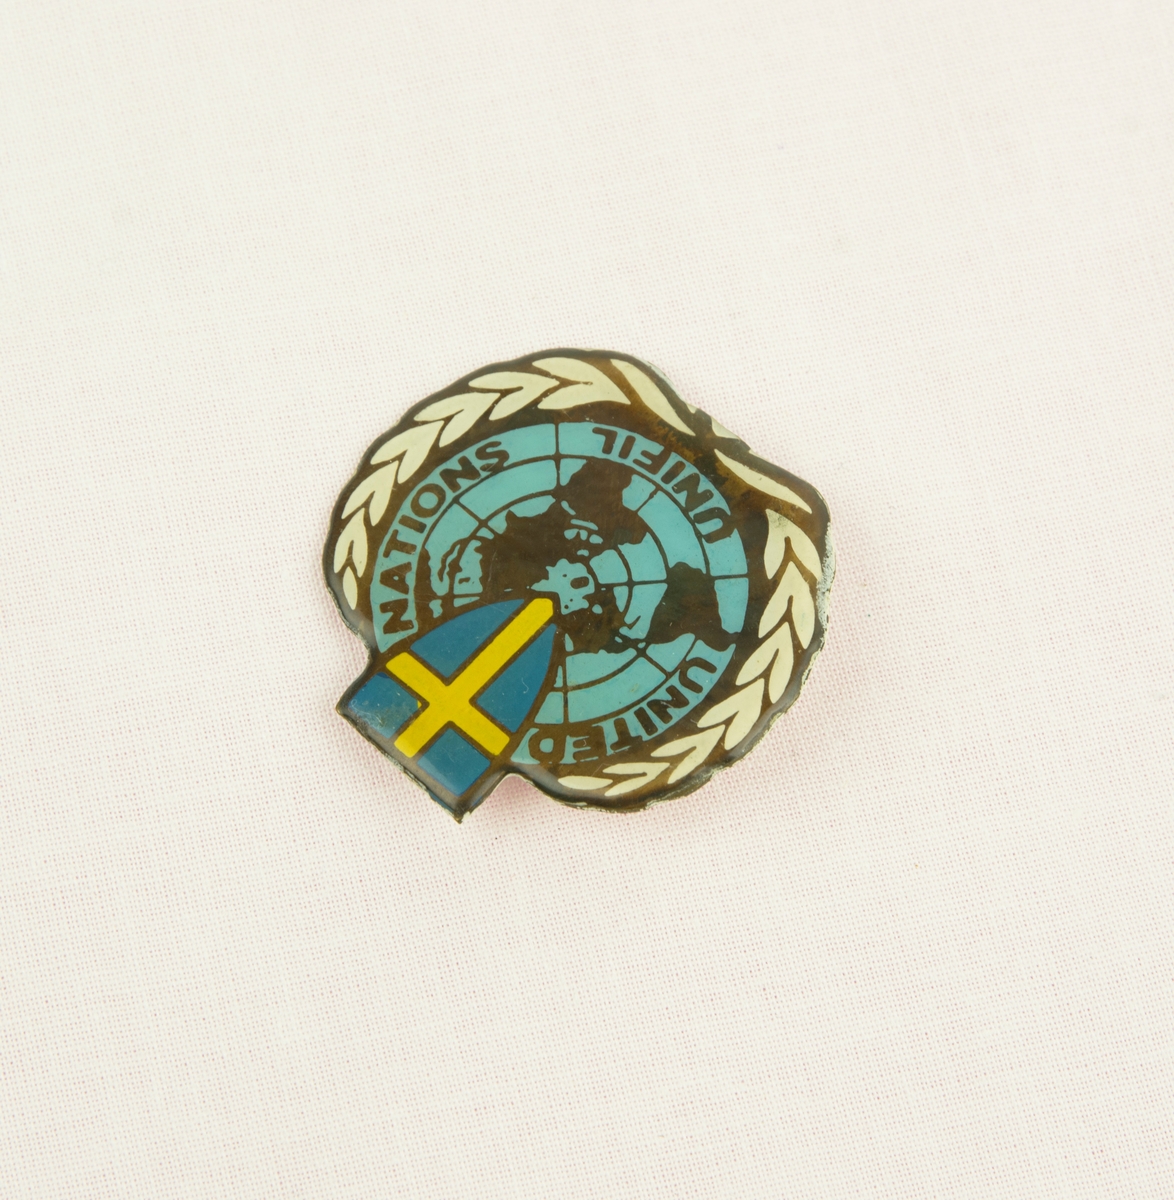 En pin från utlandstjänstgöring med motiv av FN loggan med en sköld med svenska flagga i mitten. I texten står "UNITED NATIONS UNIFIL". Fästes på kläderna med nål på baksidan.